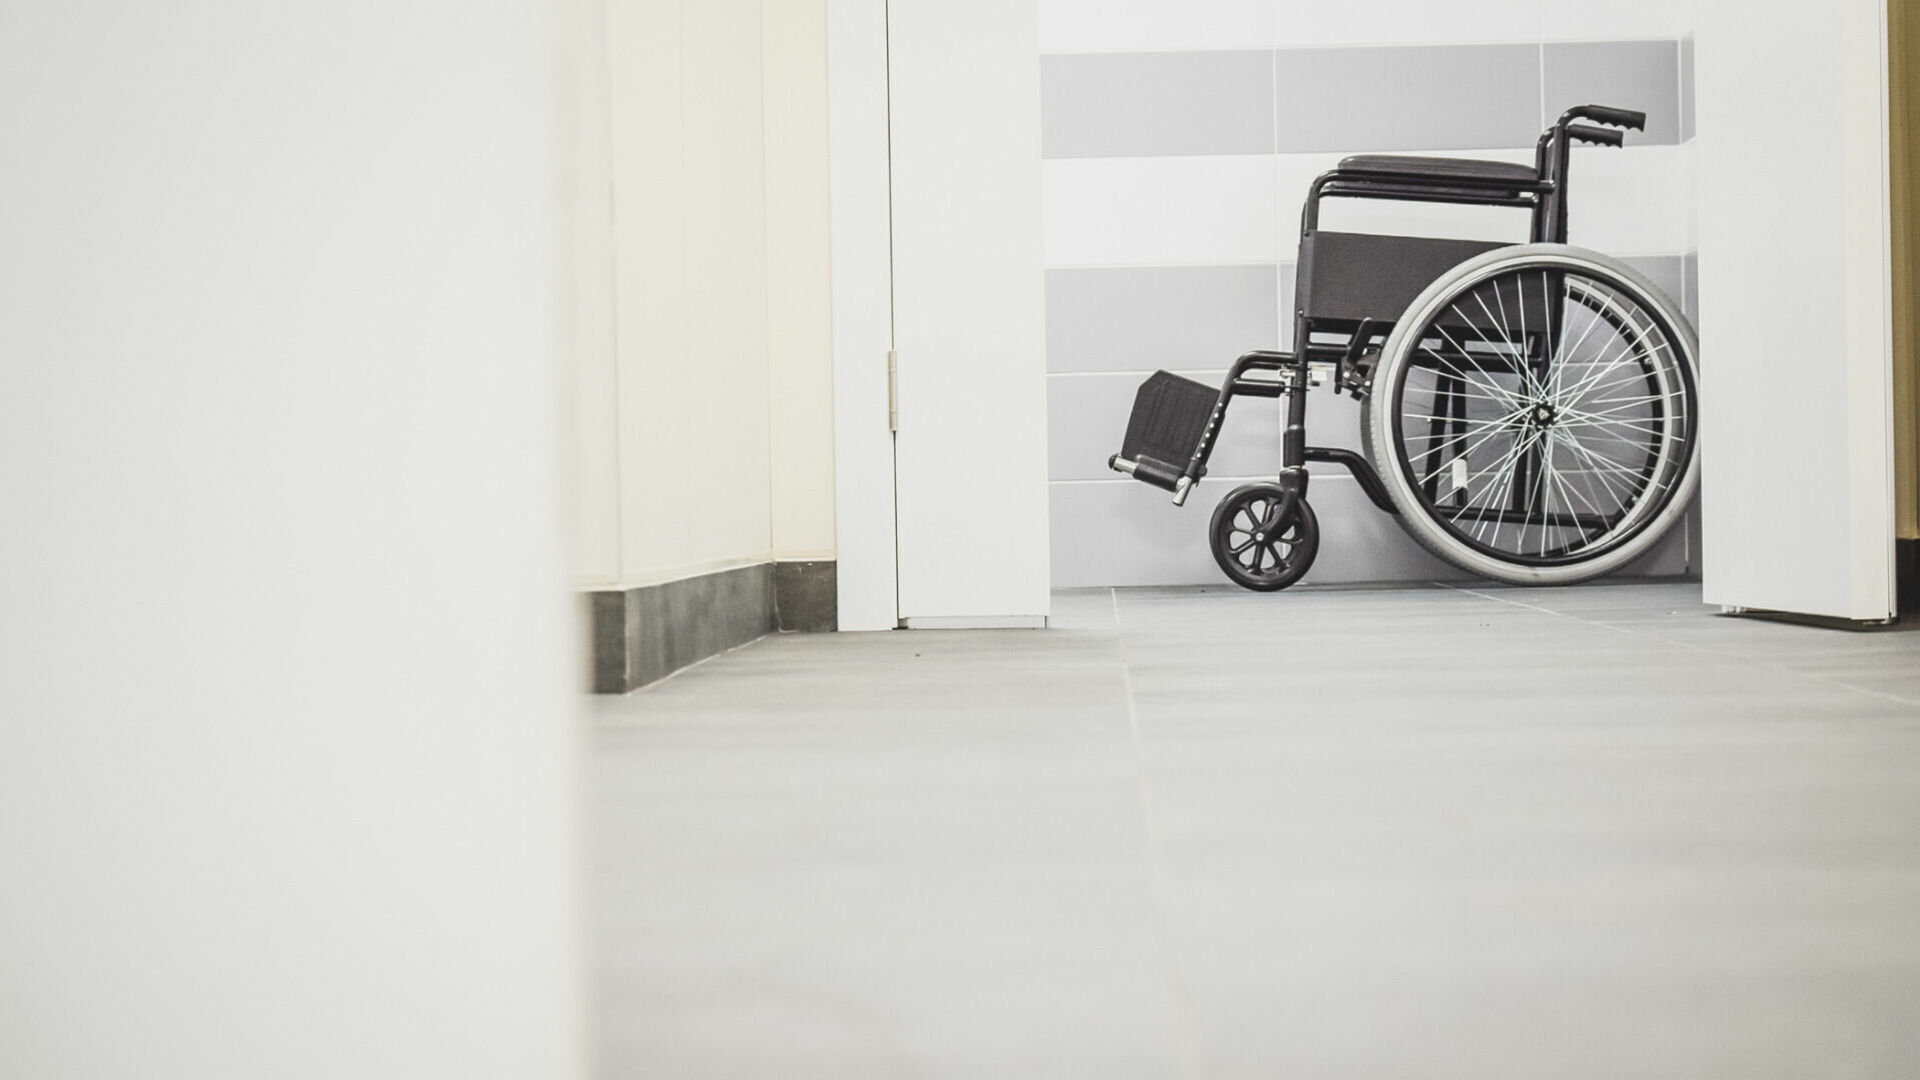 Мэрия Нижневартовска выселяет организацию инвалидов из здания